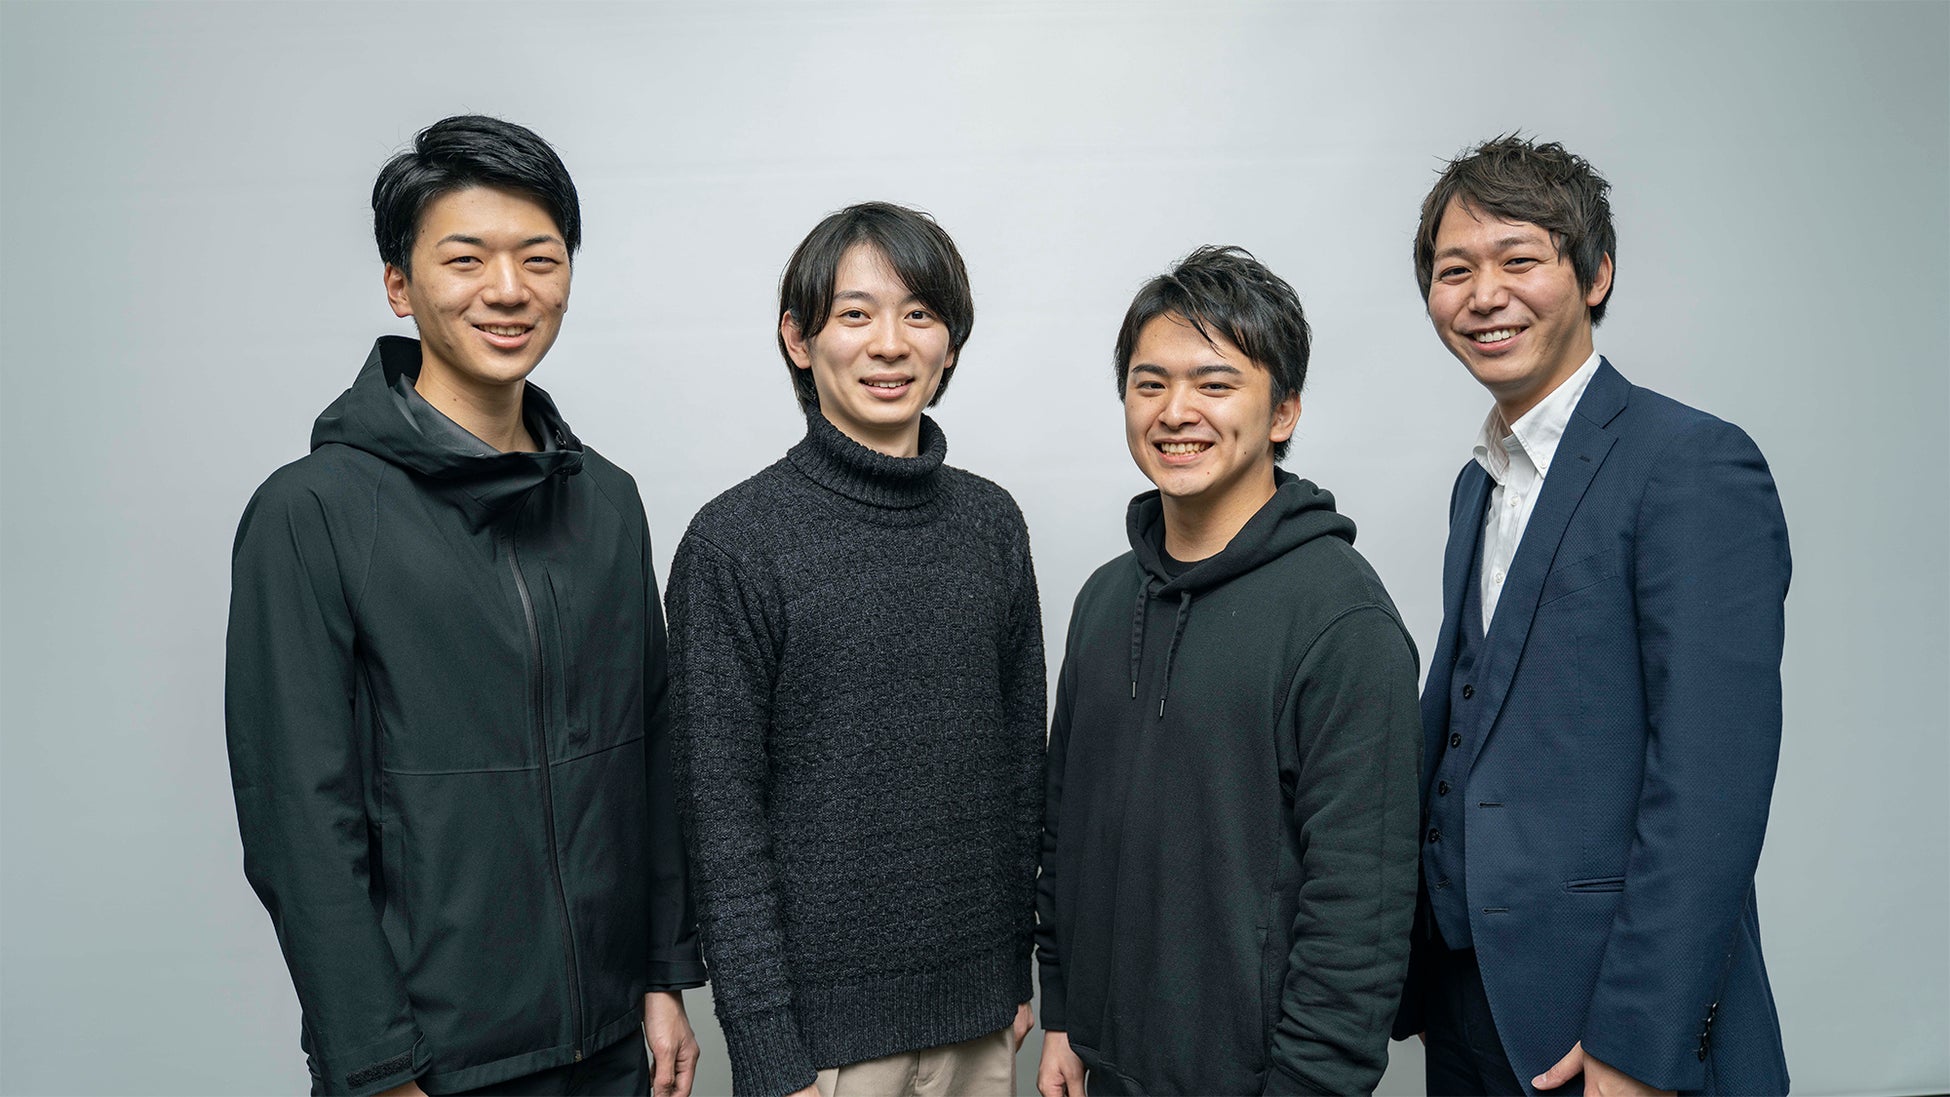 （左から）COO（グループ最高執行責任者）：安田光希、CBO（グループ最高事業責任者）：鶴岡友也、CEO（グループ最高経営責任者）：石井大智、CSO（最高営業責任者）：竹内将高